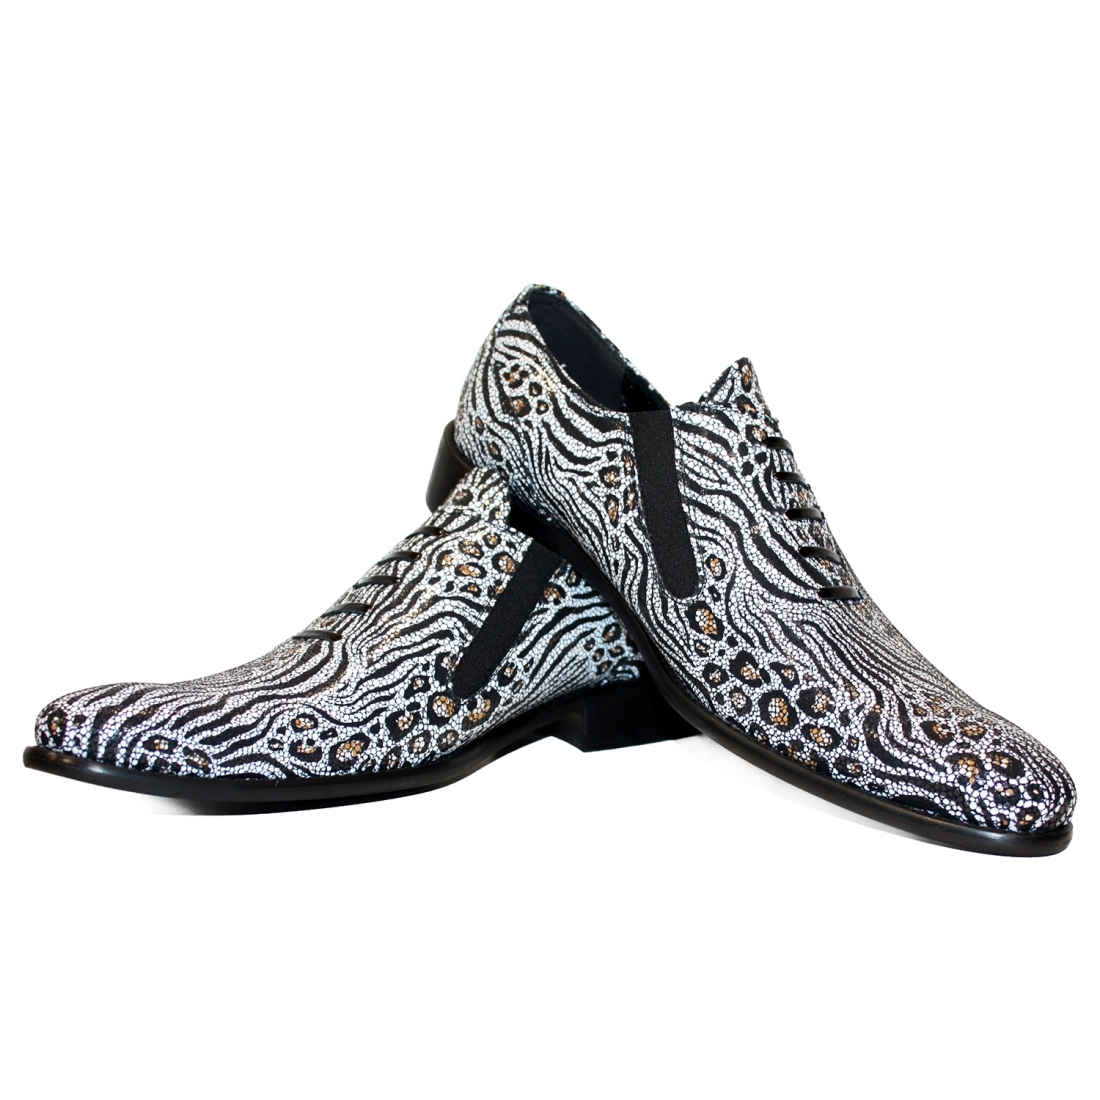 Modello Safarro - Лодочки и слайды - Handmade Colorful Italian Leather Shoes